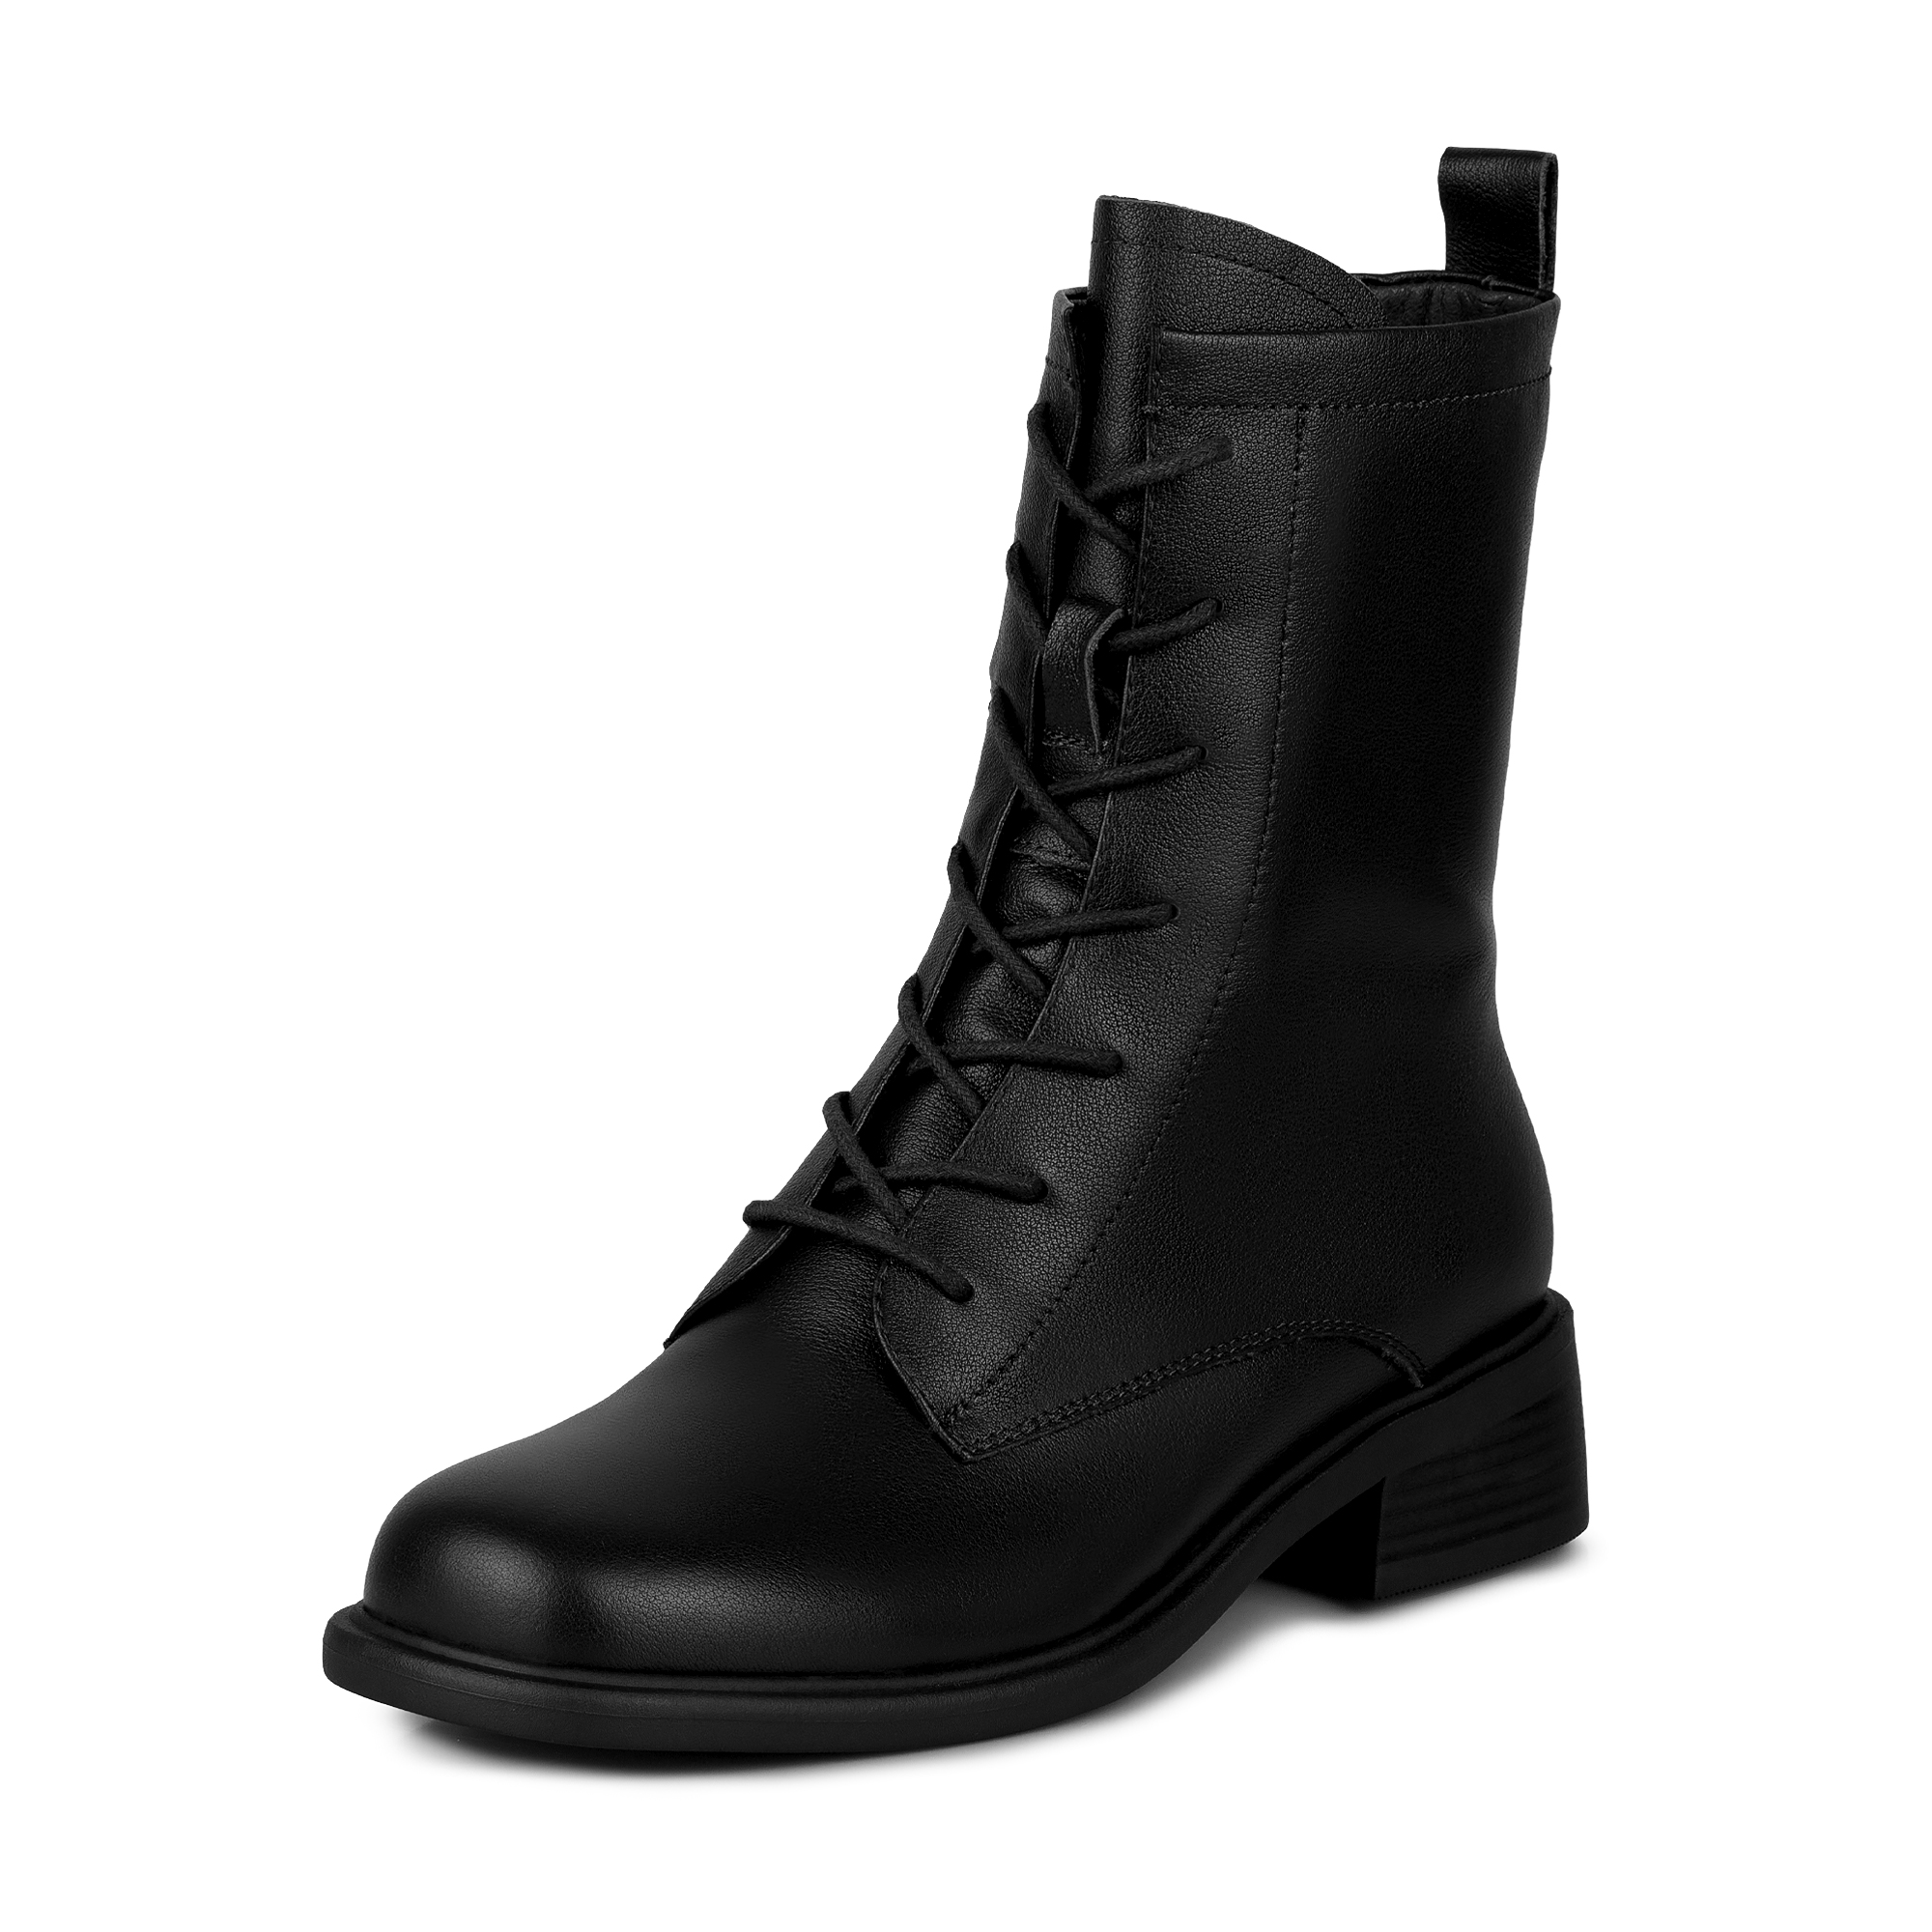 Ботинки Thomas Munz 234-070A-2102, цвет черный, размер 37 - фото 2